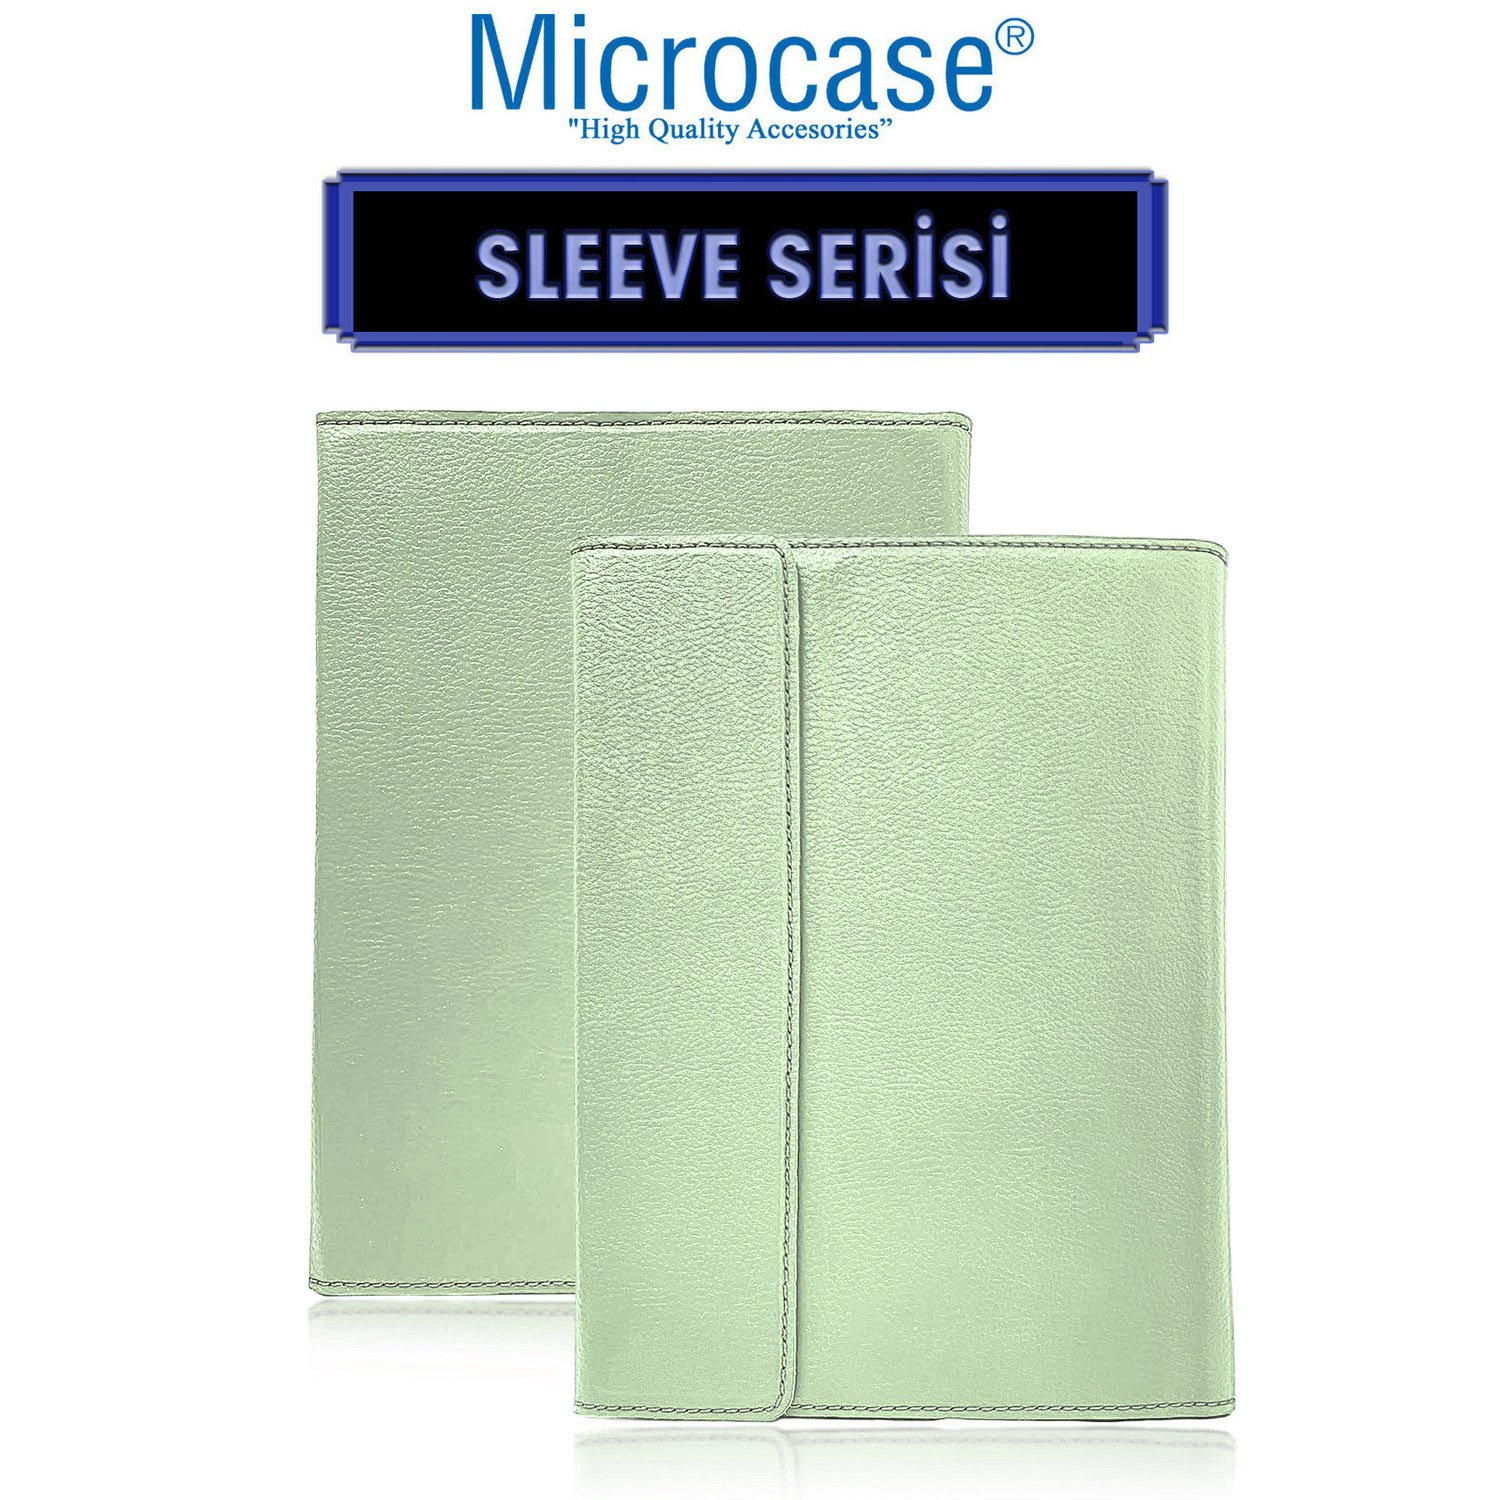 Microcase Xiaomi Pad 5 11 inch Sleeve Serisi Mıknatıs Kapaklı Standlı Kılıf - ACK101 Kırık Beyaz